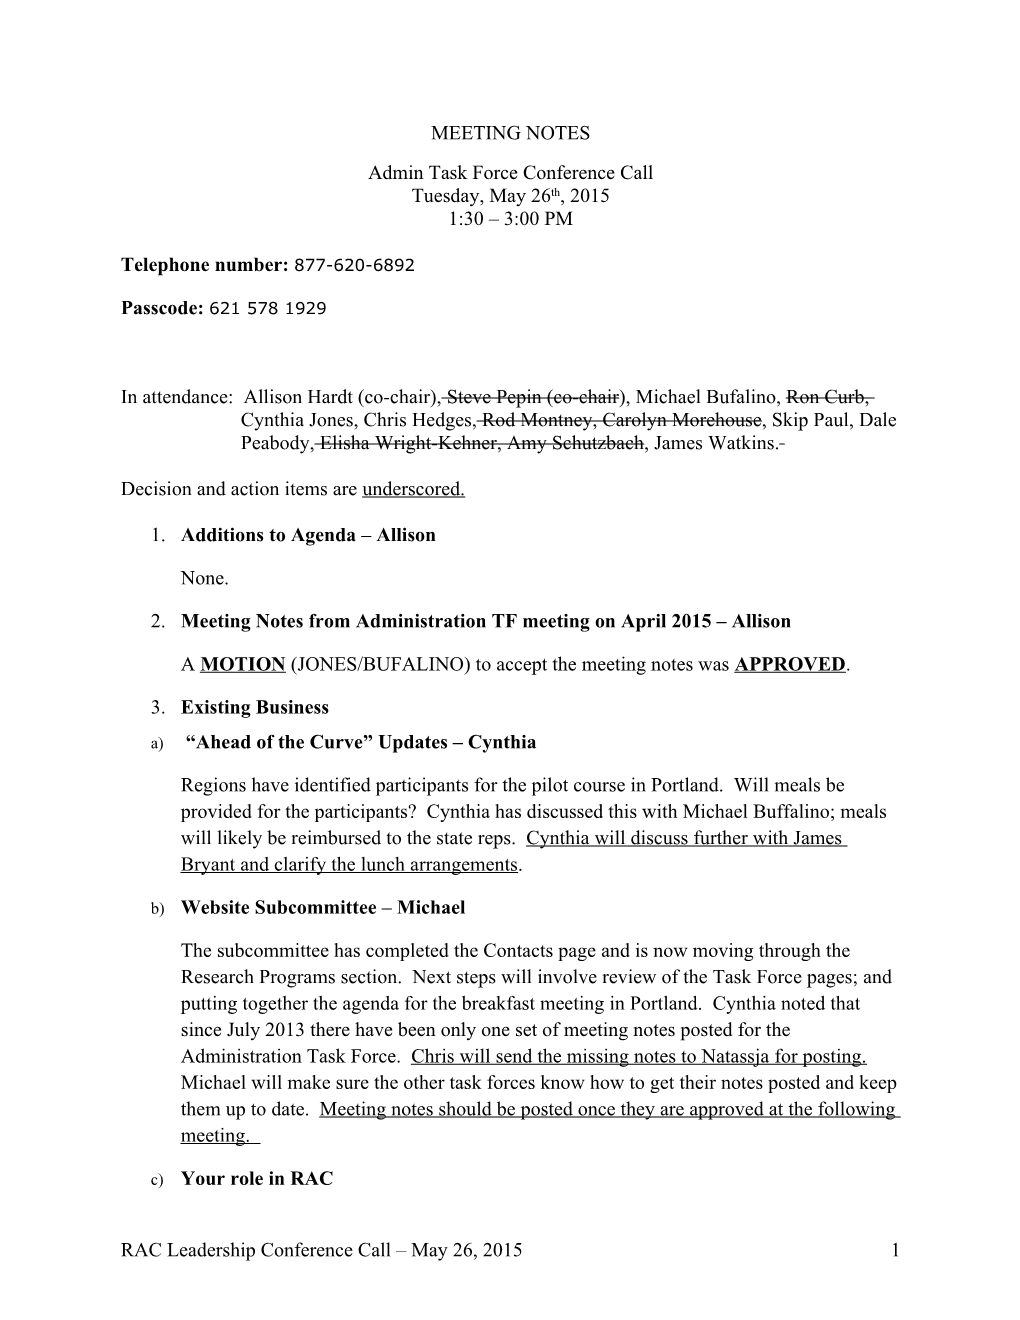 Admin TF Meeting Notes: May 26, 2015